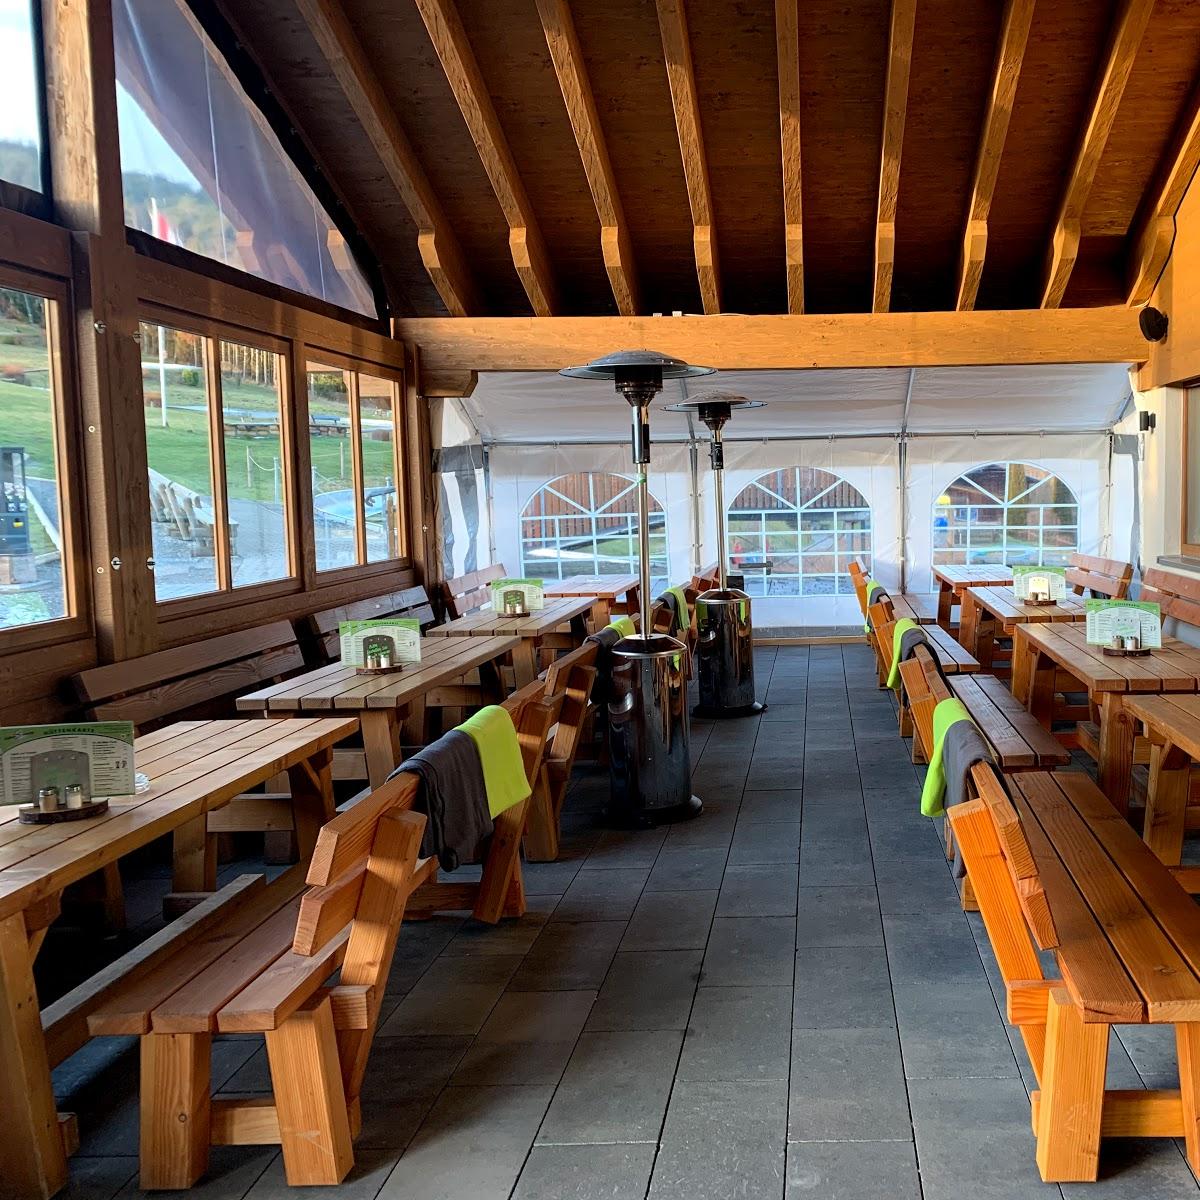 Restaurant "Einkehrschwung - Die Ski- und Rodelhütte" in Willingen (Upland)